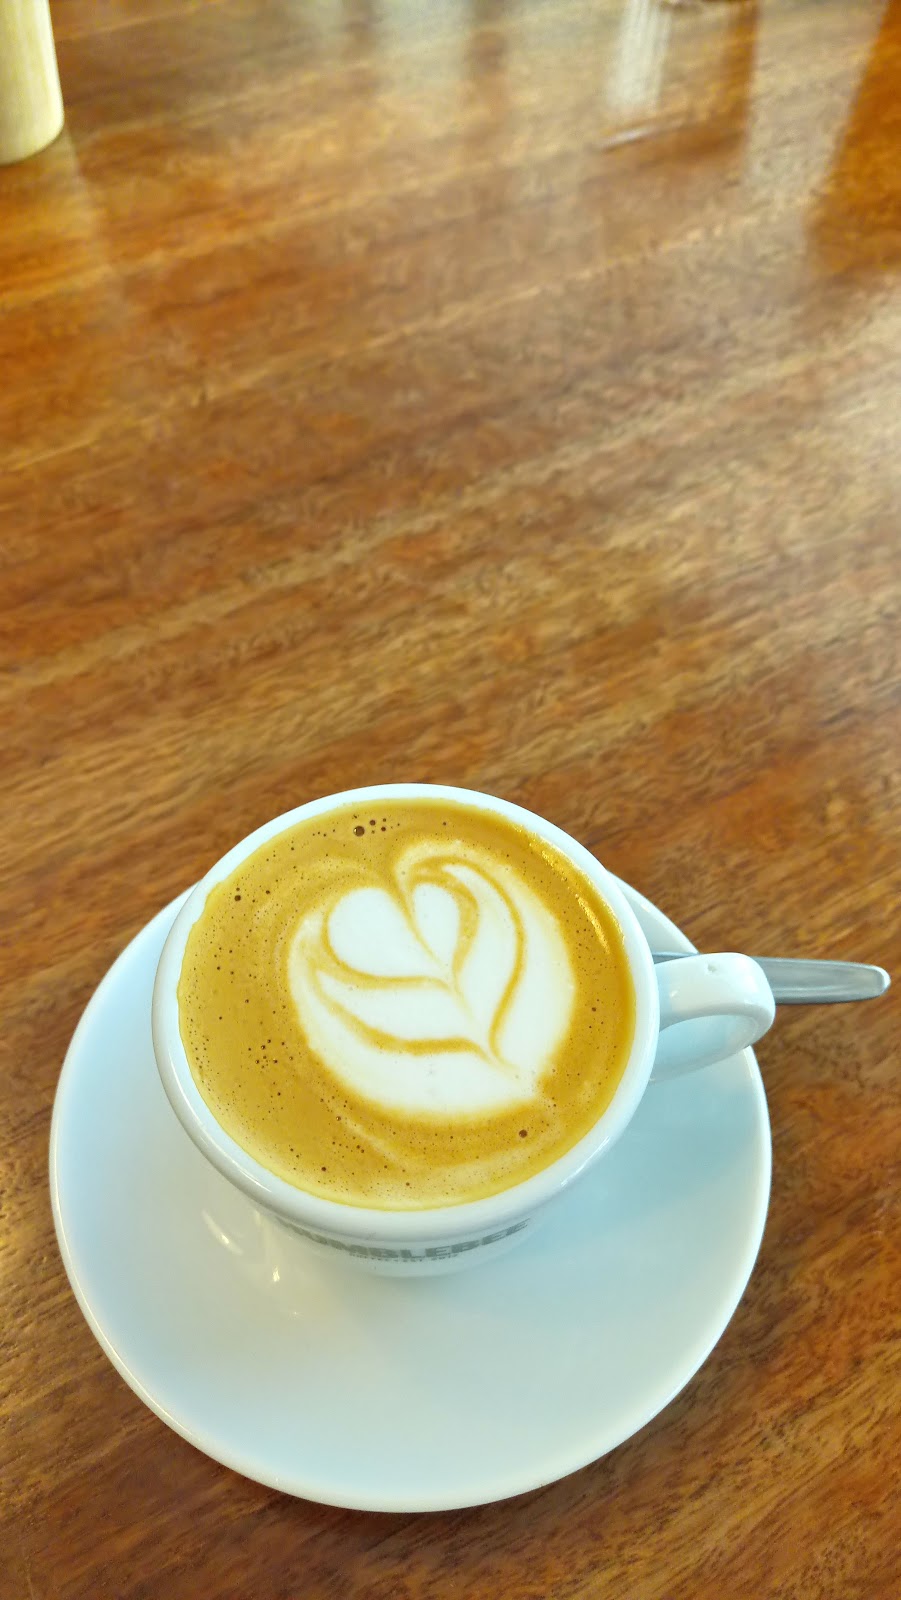 Humblebee Coffee | cafe | Shop 1/25 Rowe Ave, Rivervale WA 6103, Australia